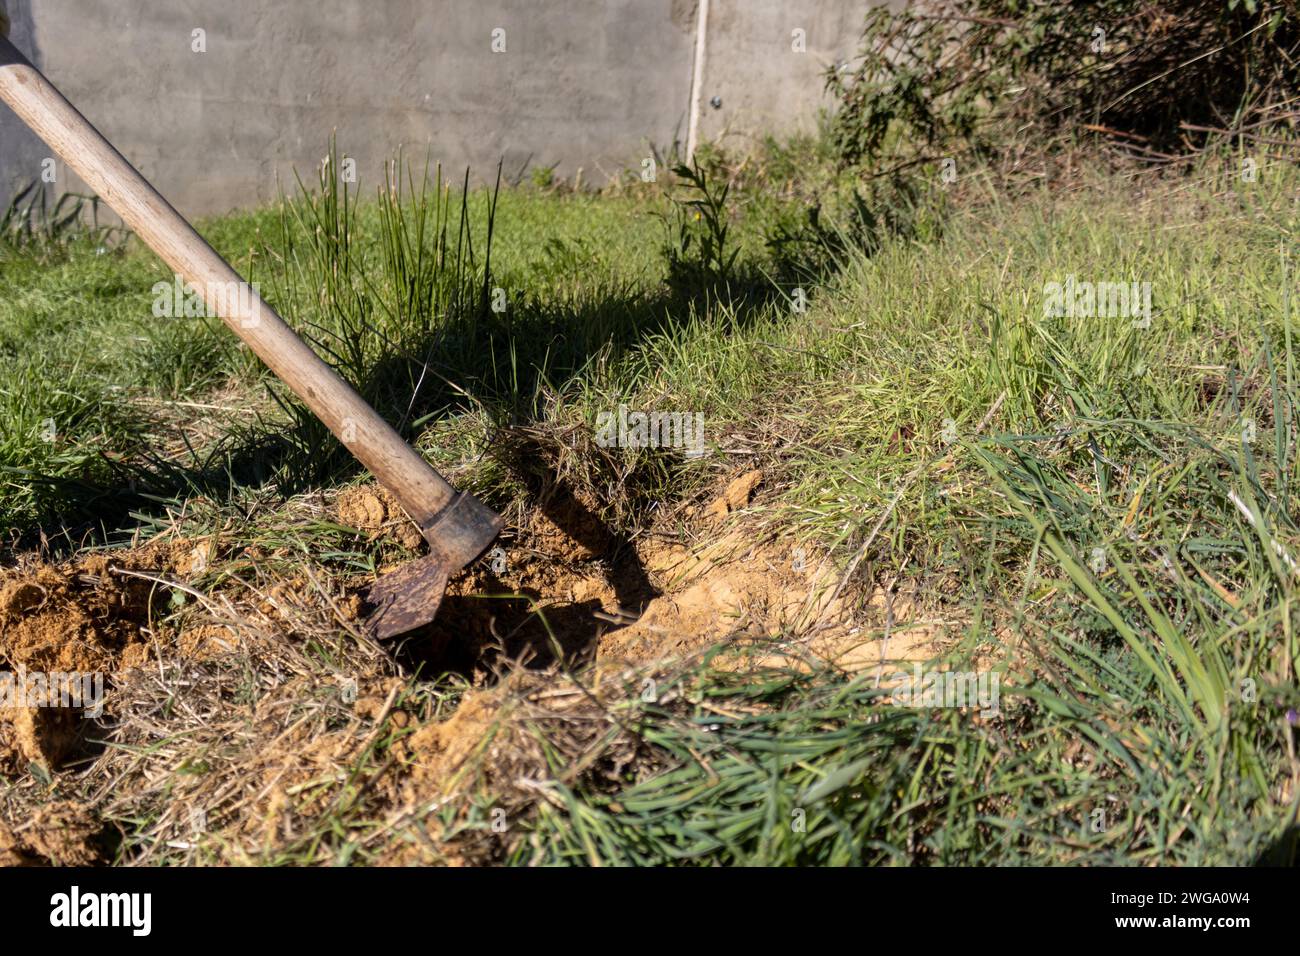 Dettaglio di un escavatore che scava e solleva il terreno Foto Stock